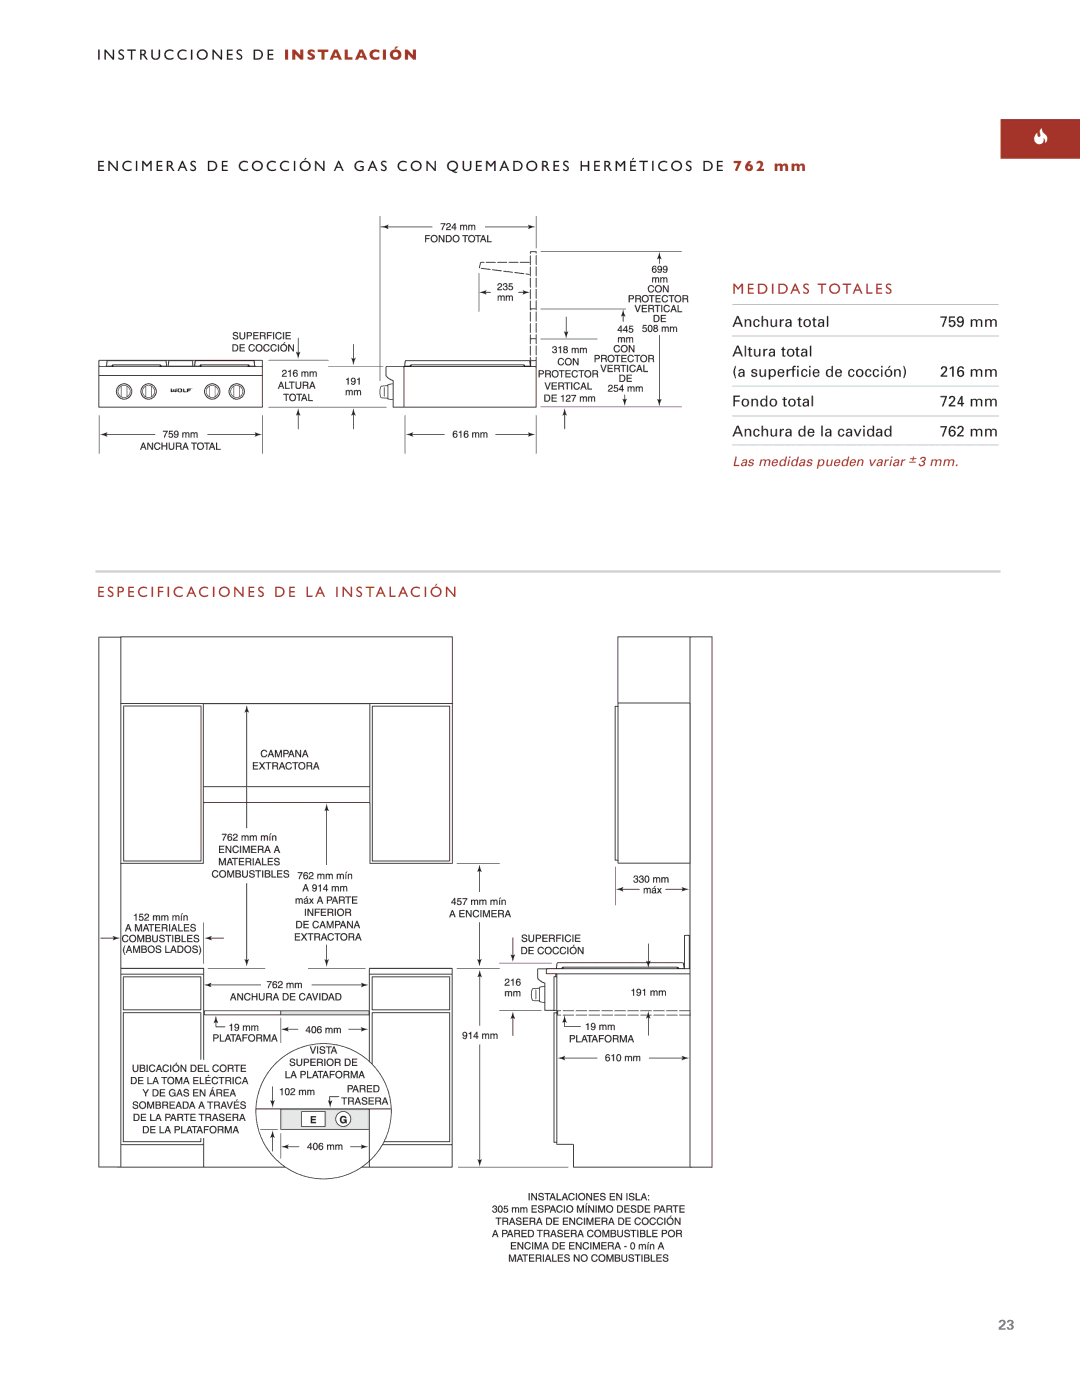 Wolf ICBSRT304 installation instructions Medidas Totales, Especificaciones DE LA Instalación 